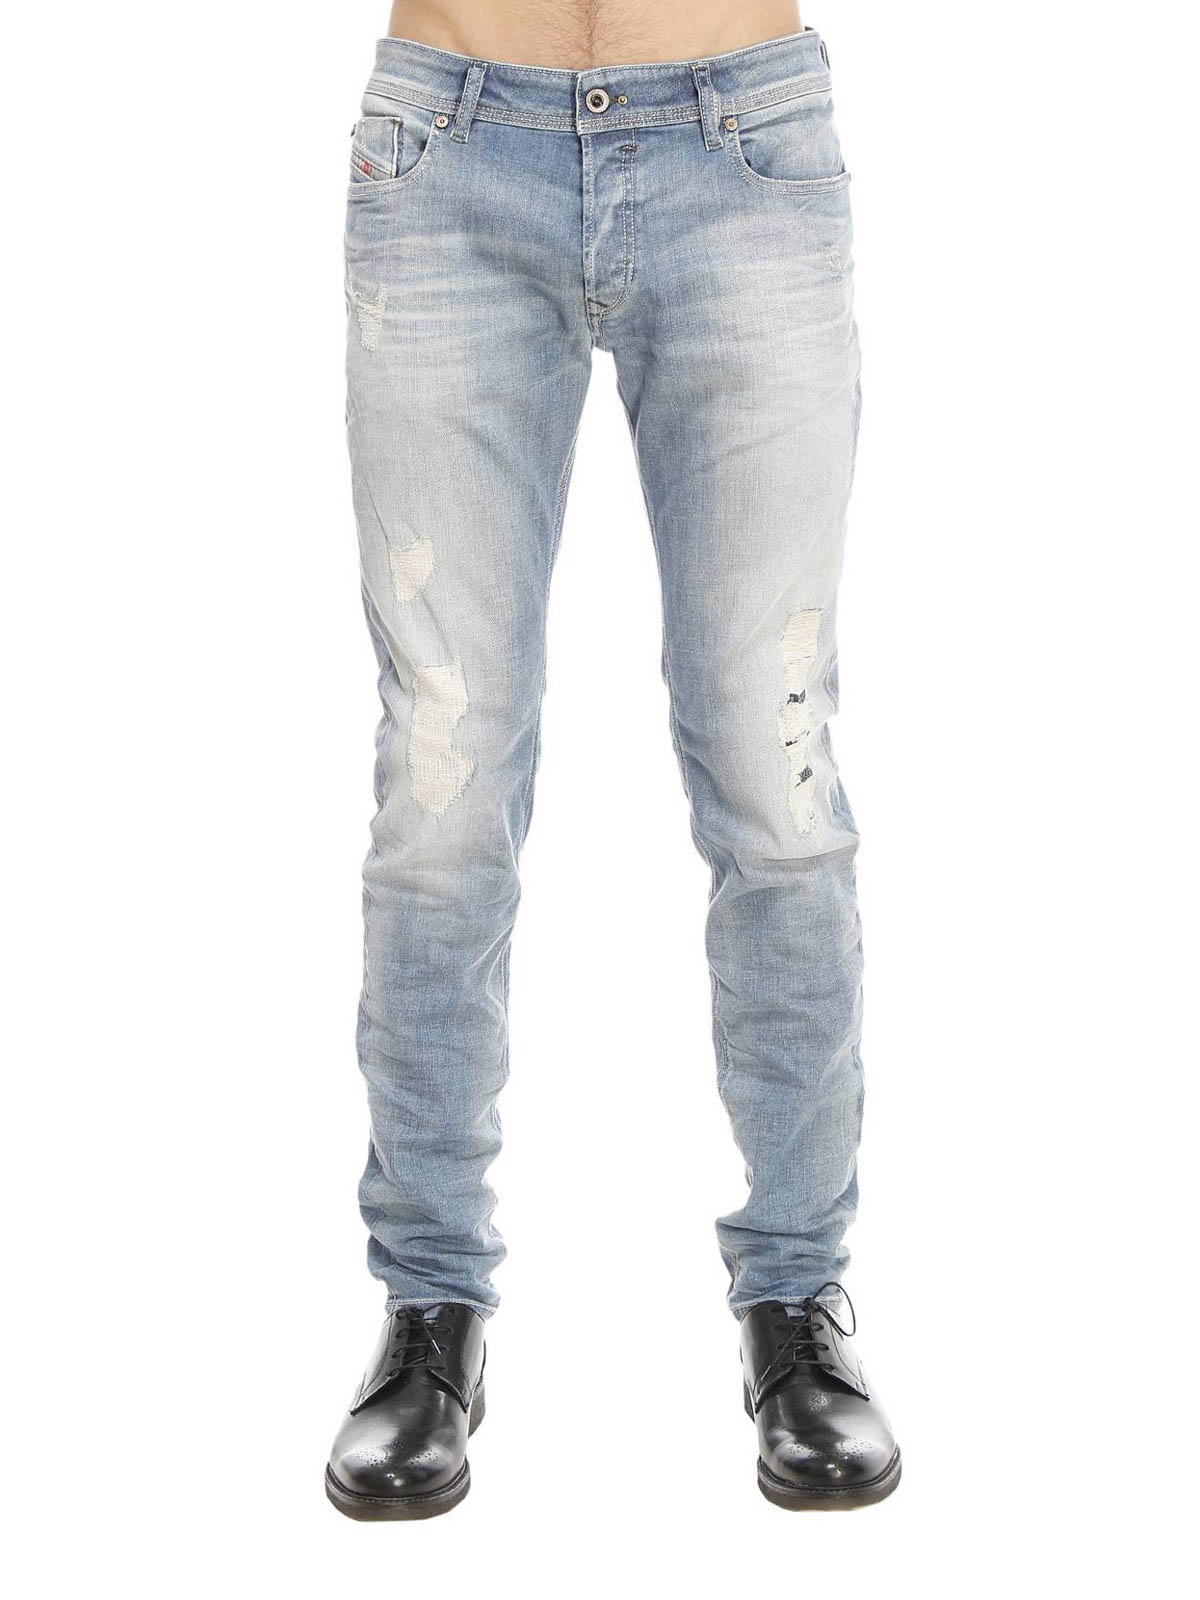 Sobriquette komen Vuil Skinny jeans Diesel - Sleenker slim jeans - 00S7VG672I01 | iKRIX.com